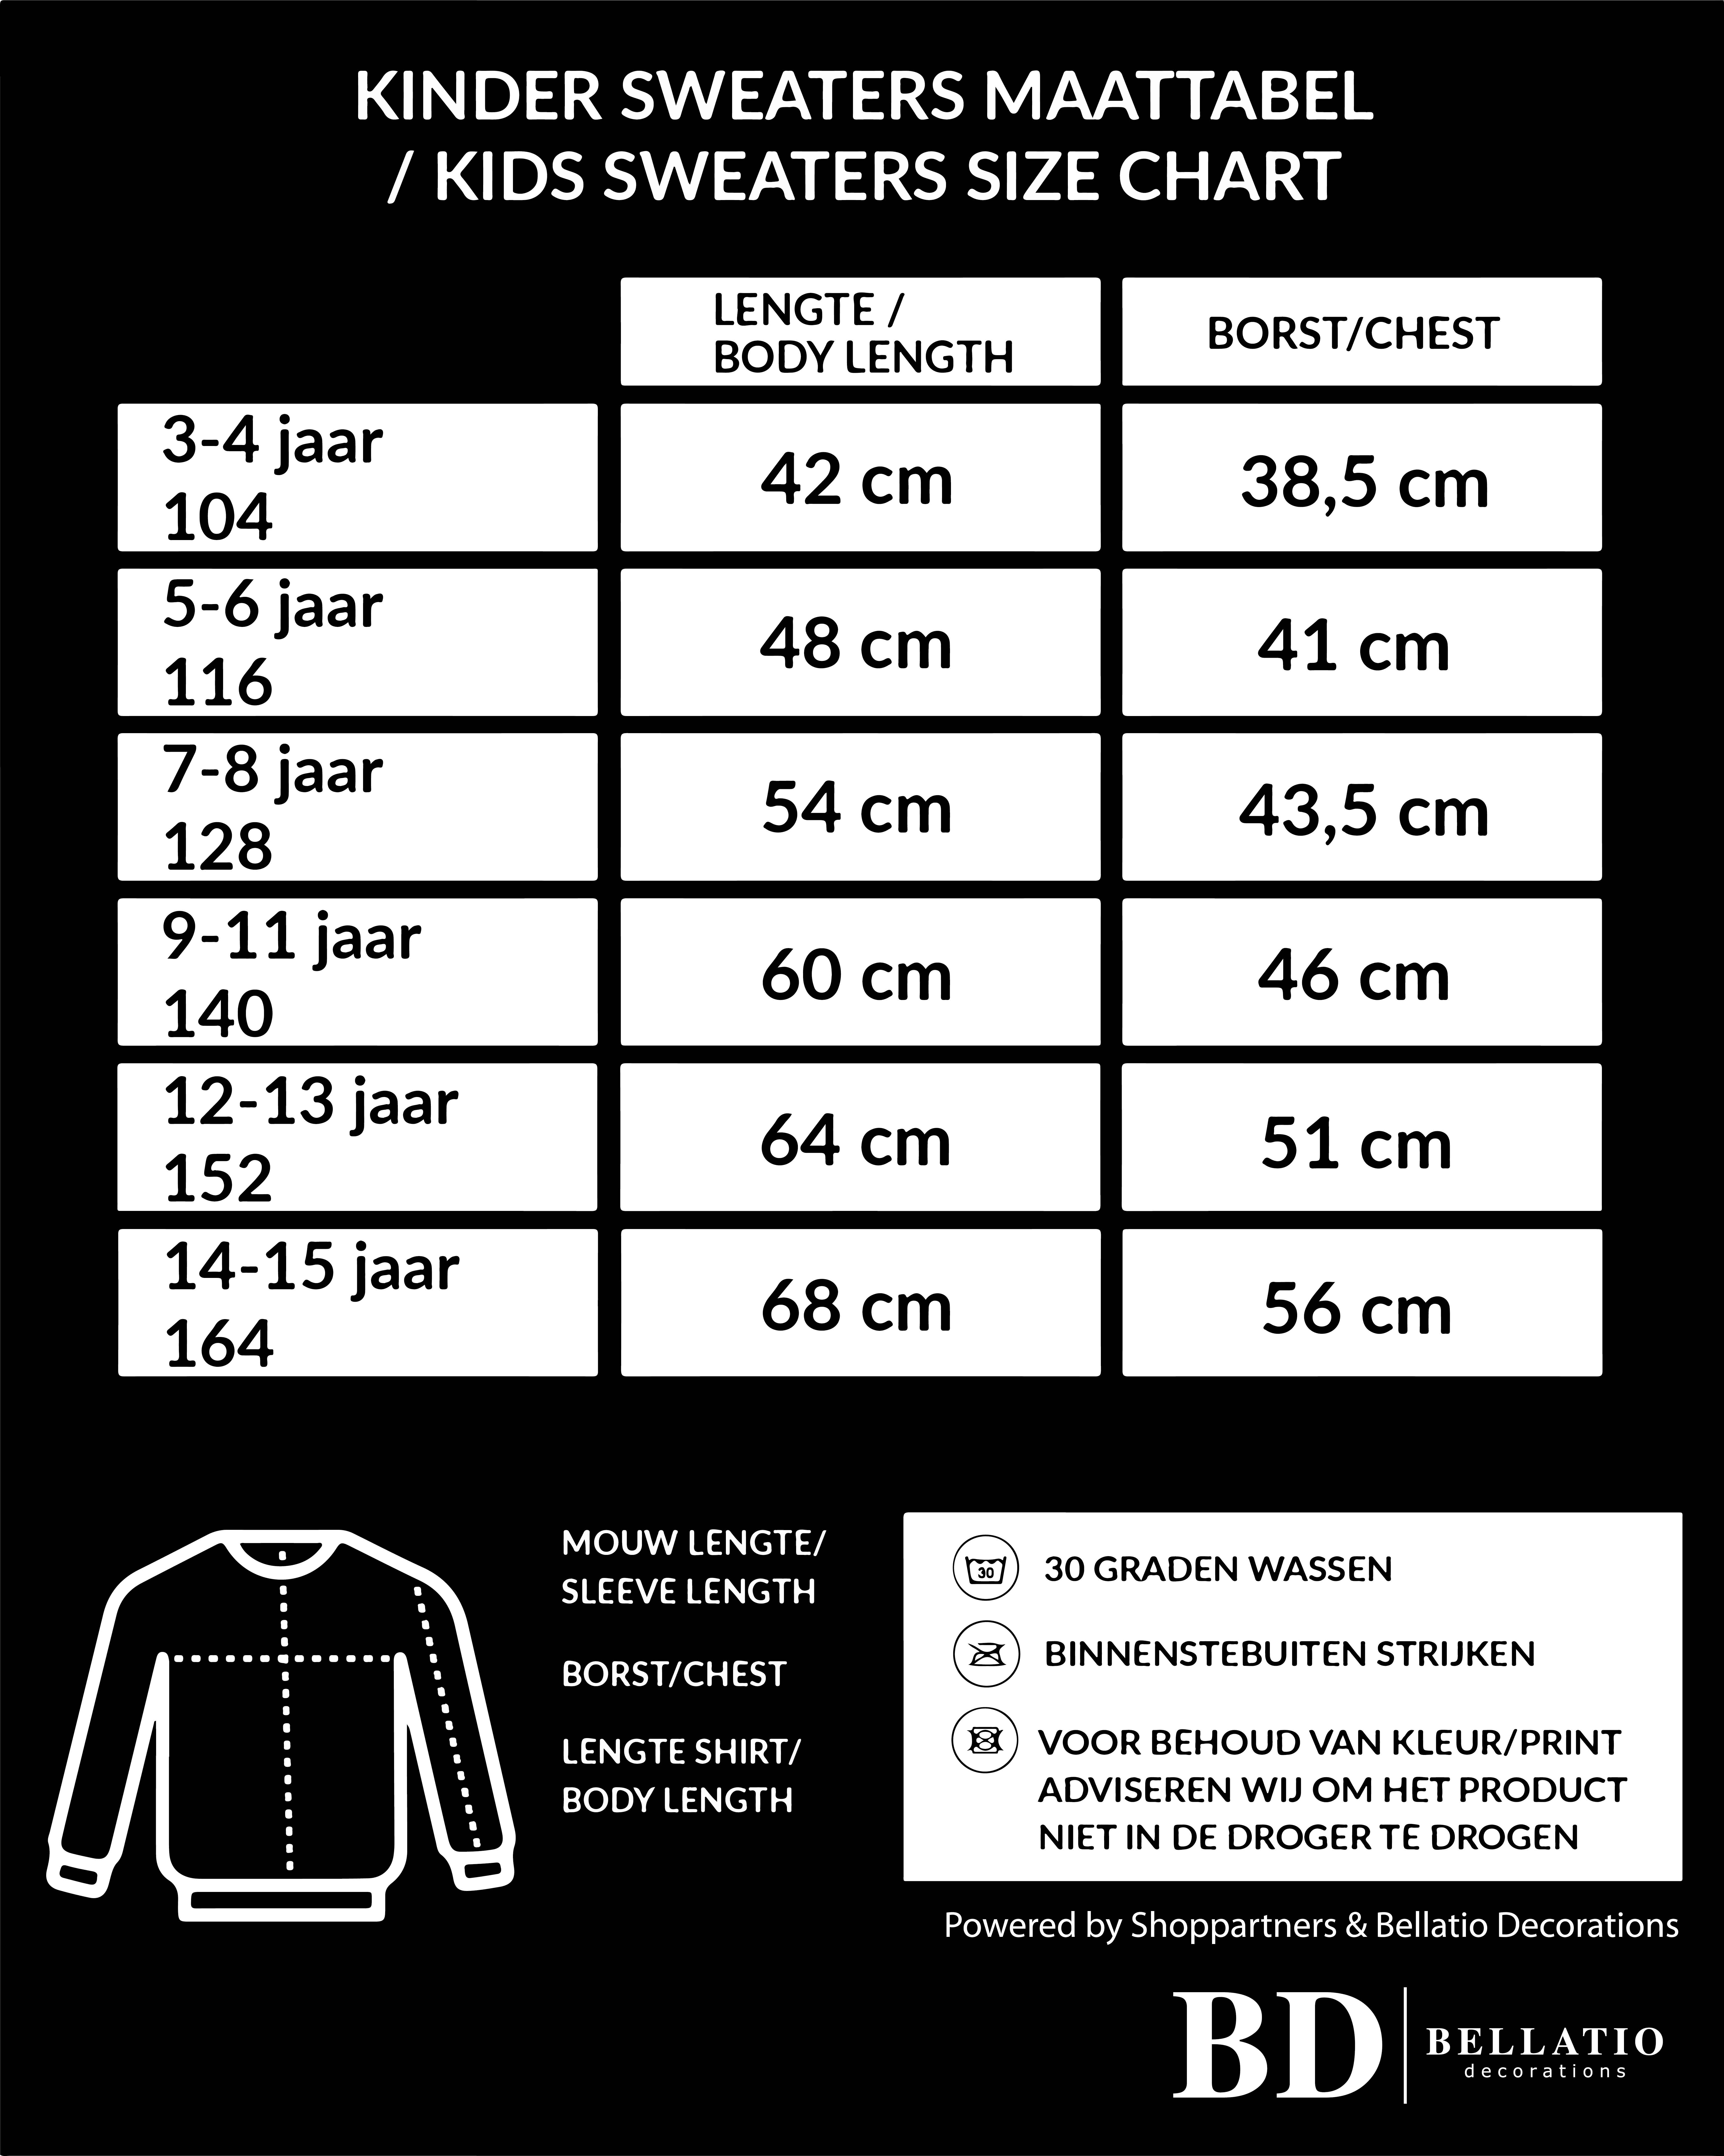 Belgie kampioen supporter sweater / trui zwart EK/ WK voor kinderen